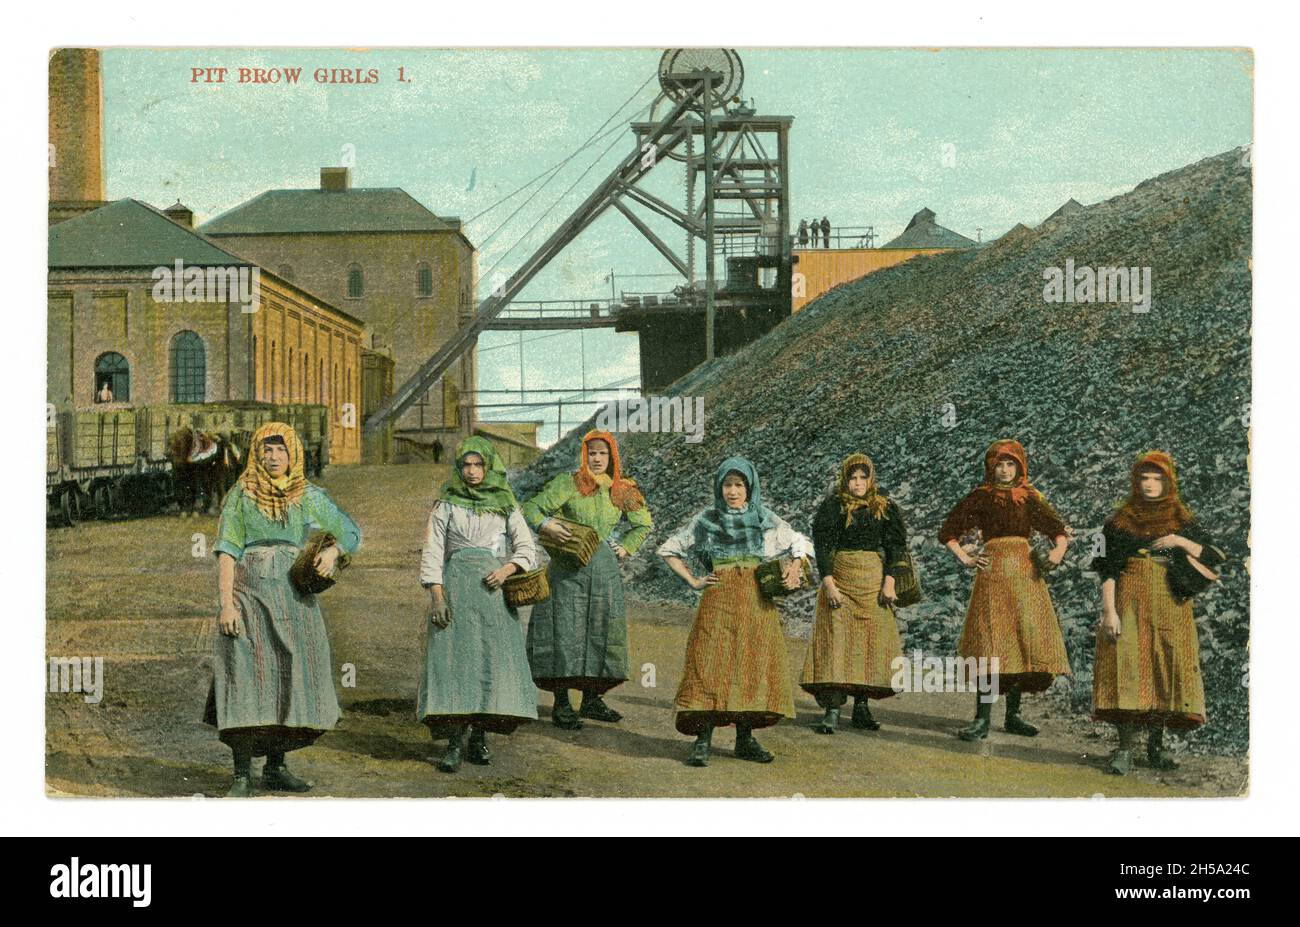 Carte postale originale du début des années 1900 de jeunes filles à front de mer portant un foulard, des vêtements de travail, à la tête de la fosse, la mine de charbon Wigan Junction, Lancashire, Angleterre, Royaume-Uni a publié en 1911, mais image des environs de 1905. Banque D'Images